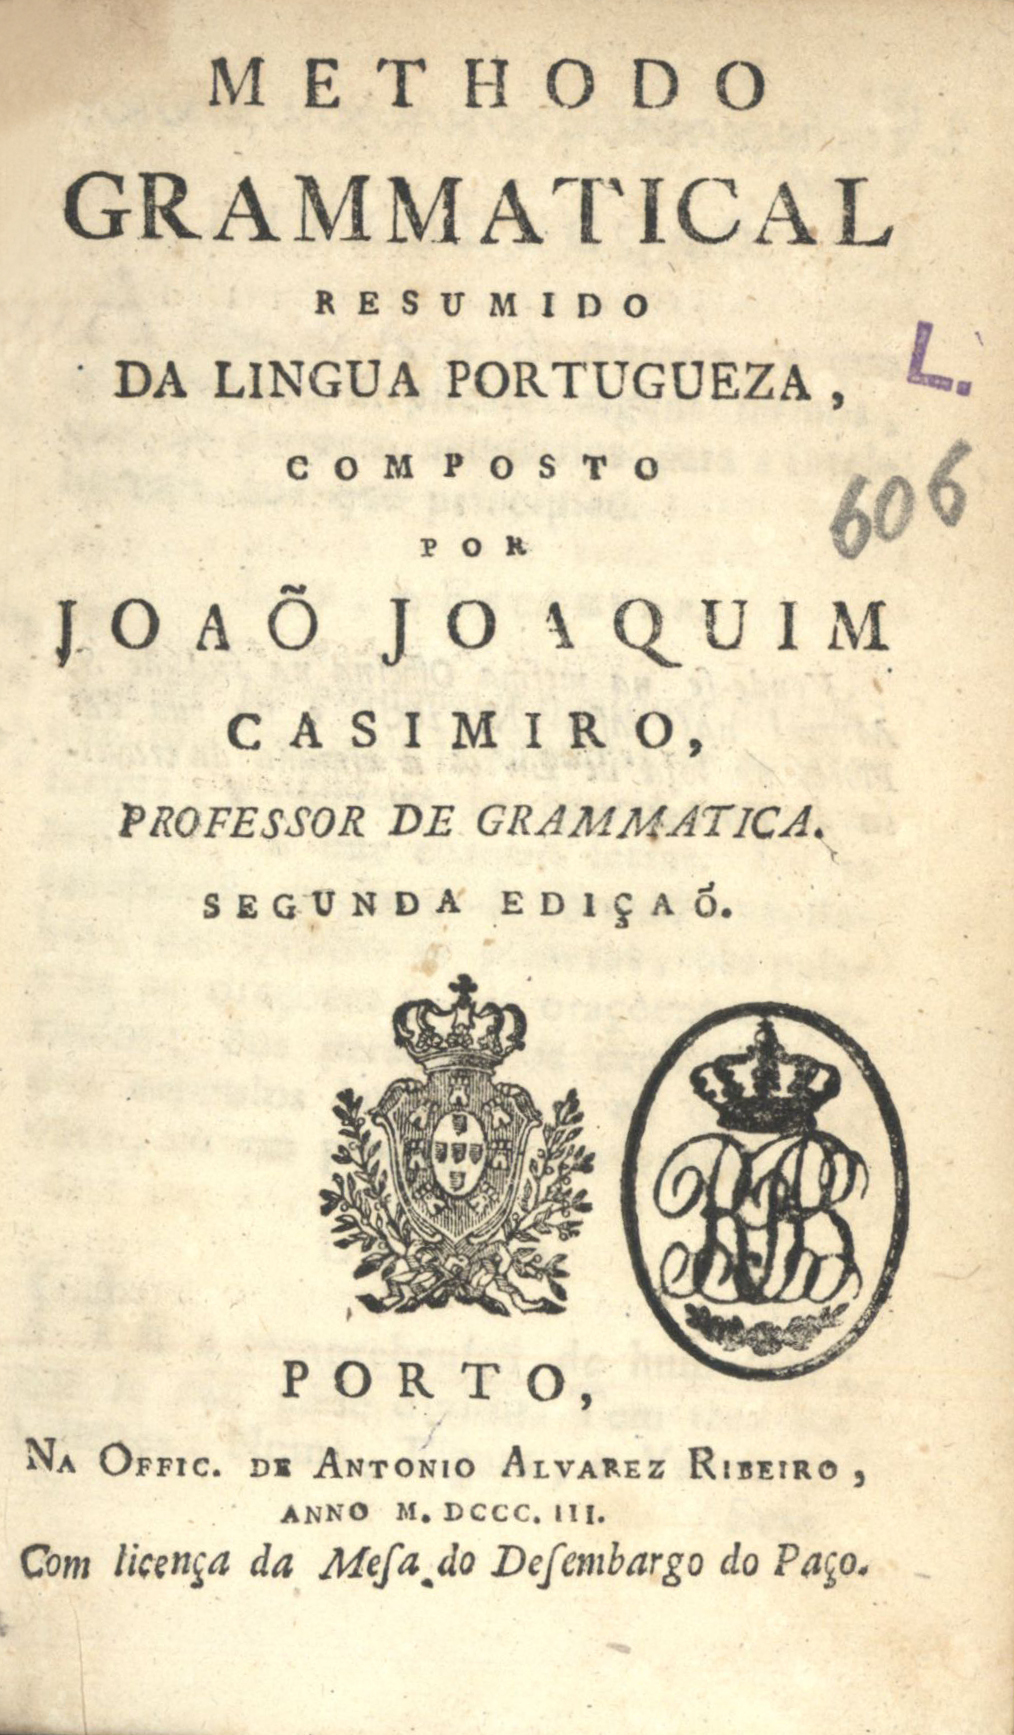 Cover of Methodo grammatical resumido da lingua portugueza / João Joaquim Casimiro. - 2ª ed. - Porto : Offi. de António Alvares Ribeiro, 1803. - 1 v. ; 20 cm